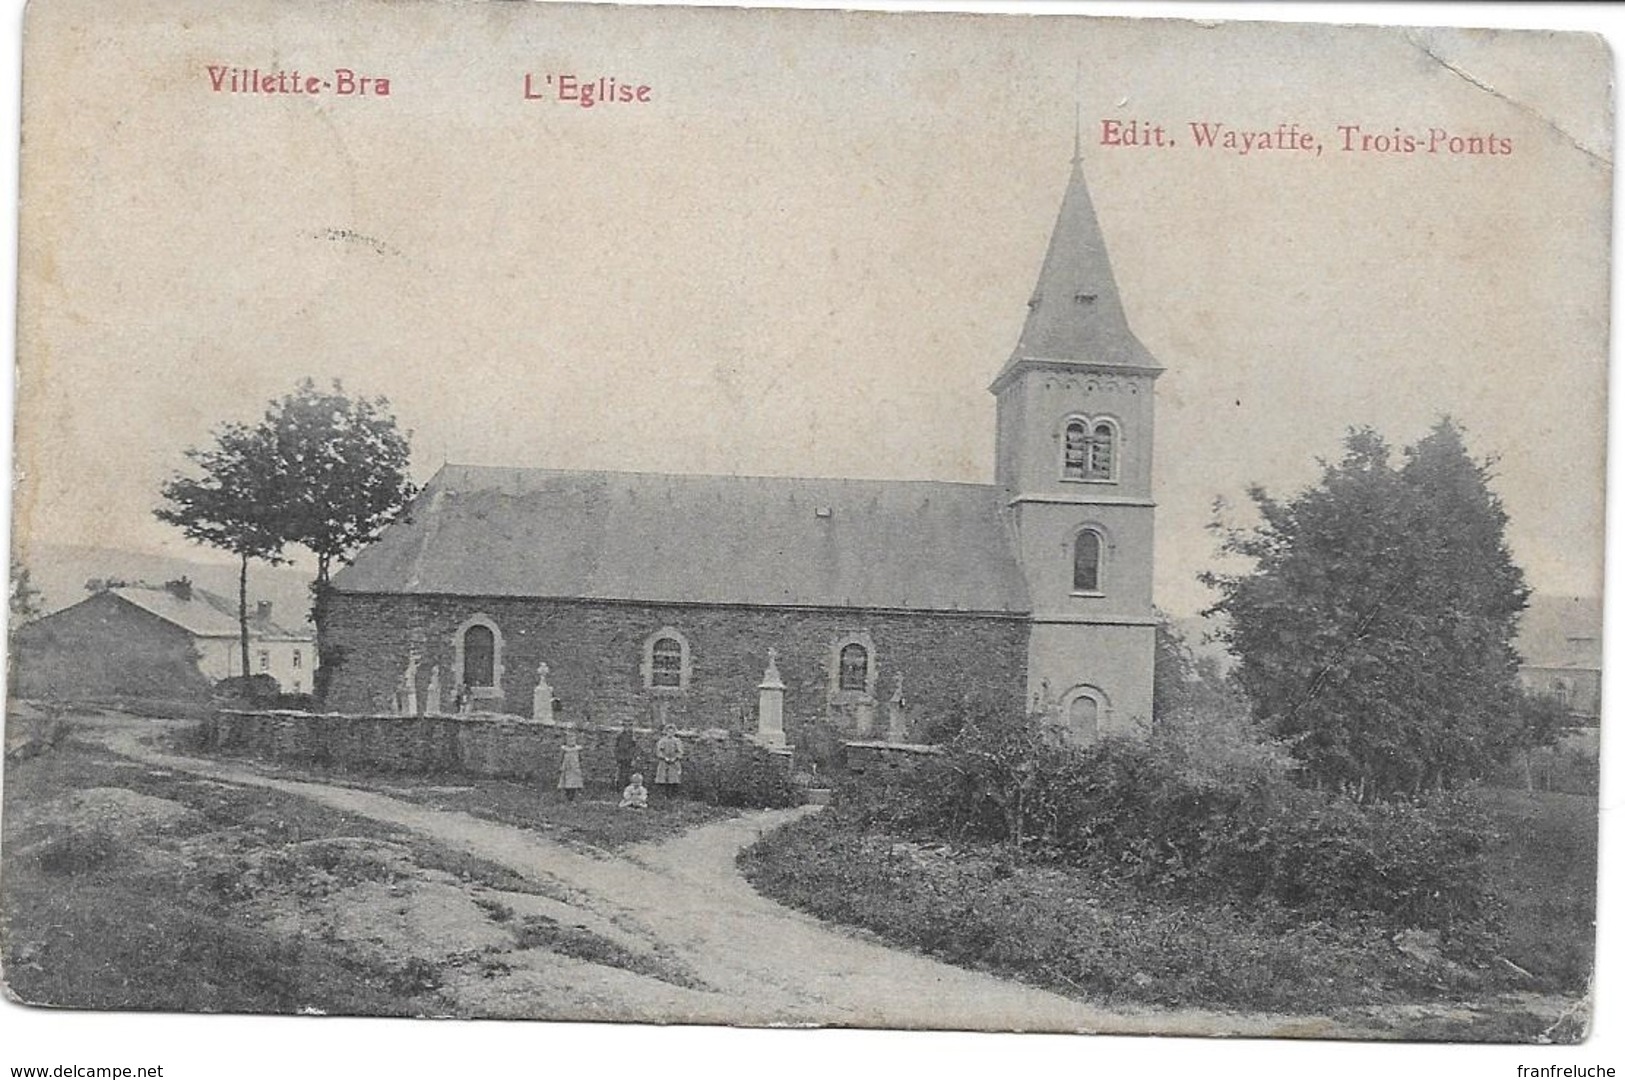 VILLETTE BRA (4990) L église - Lierneux